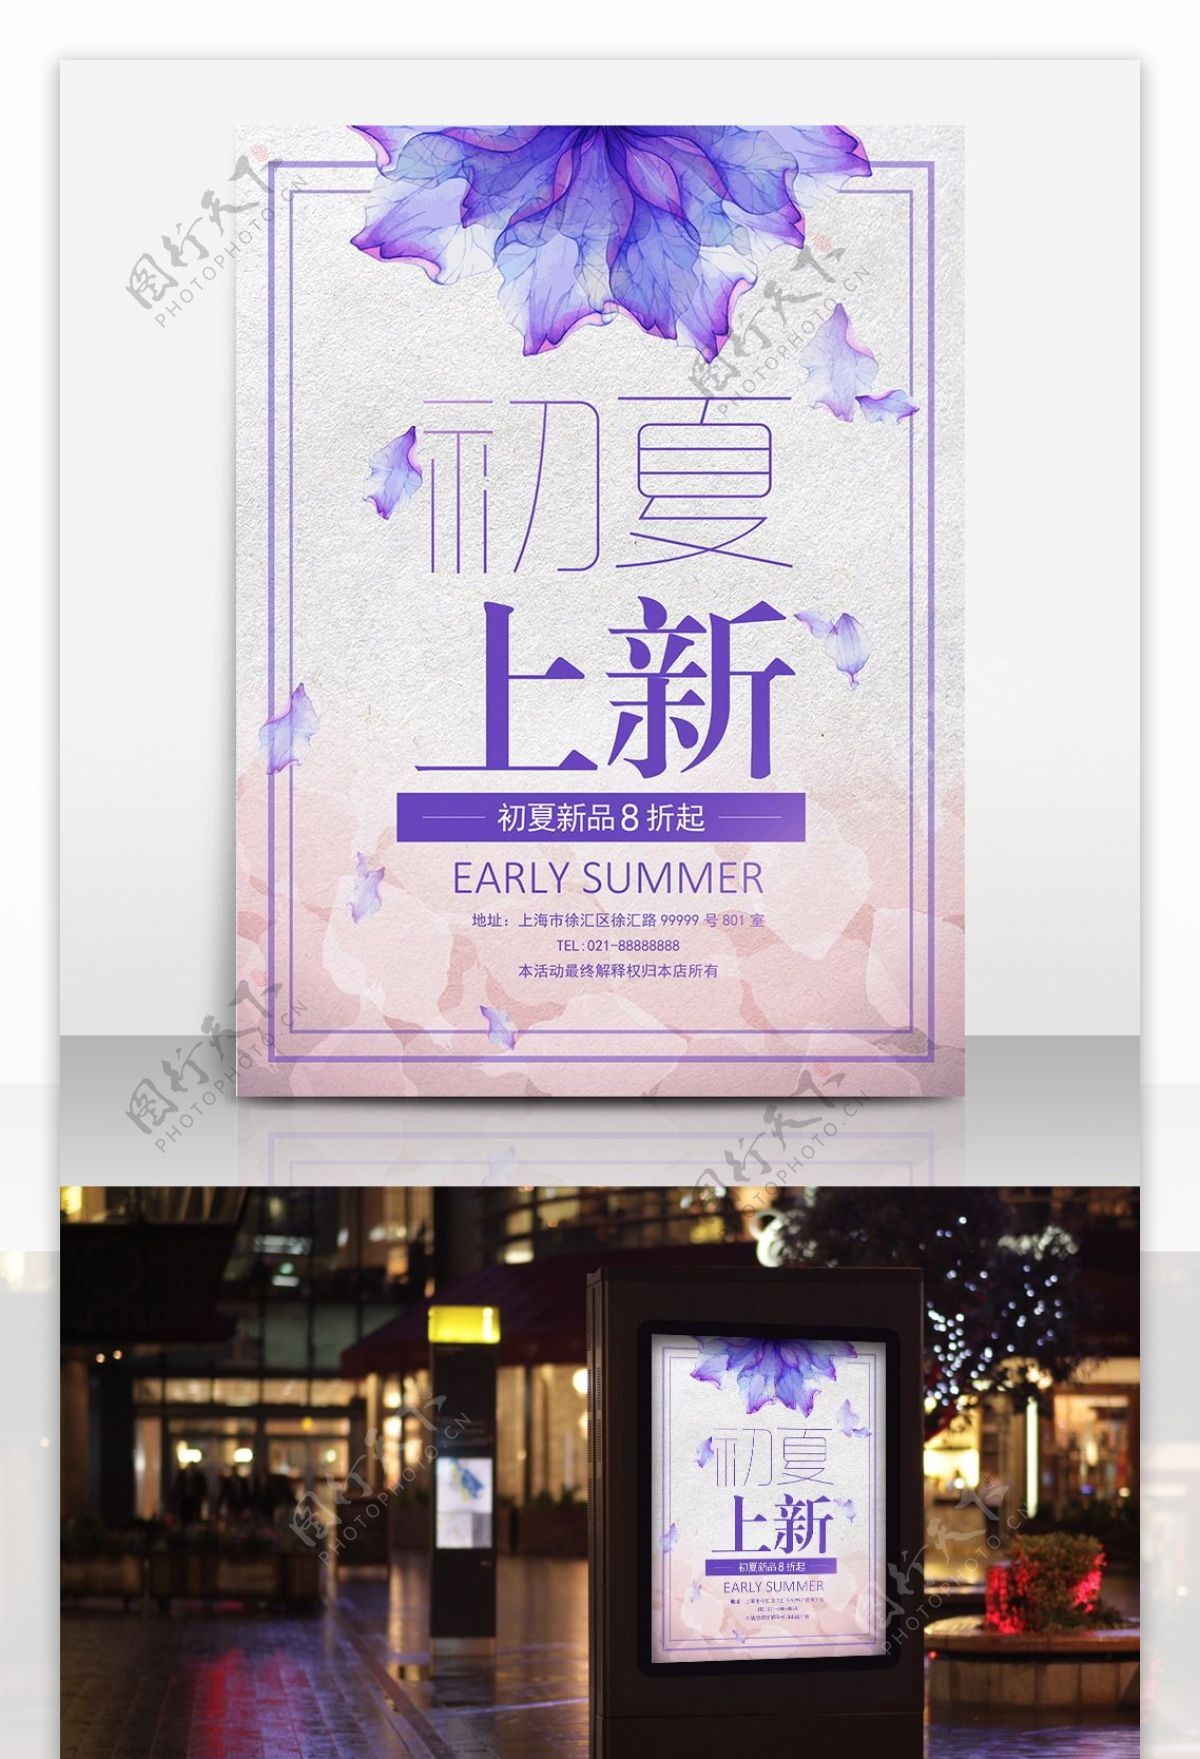 简约大方唯美文艺风初夏上新紫色促销海报